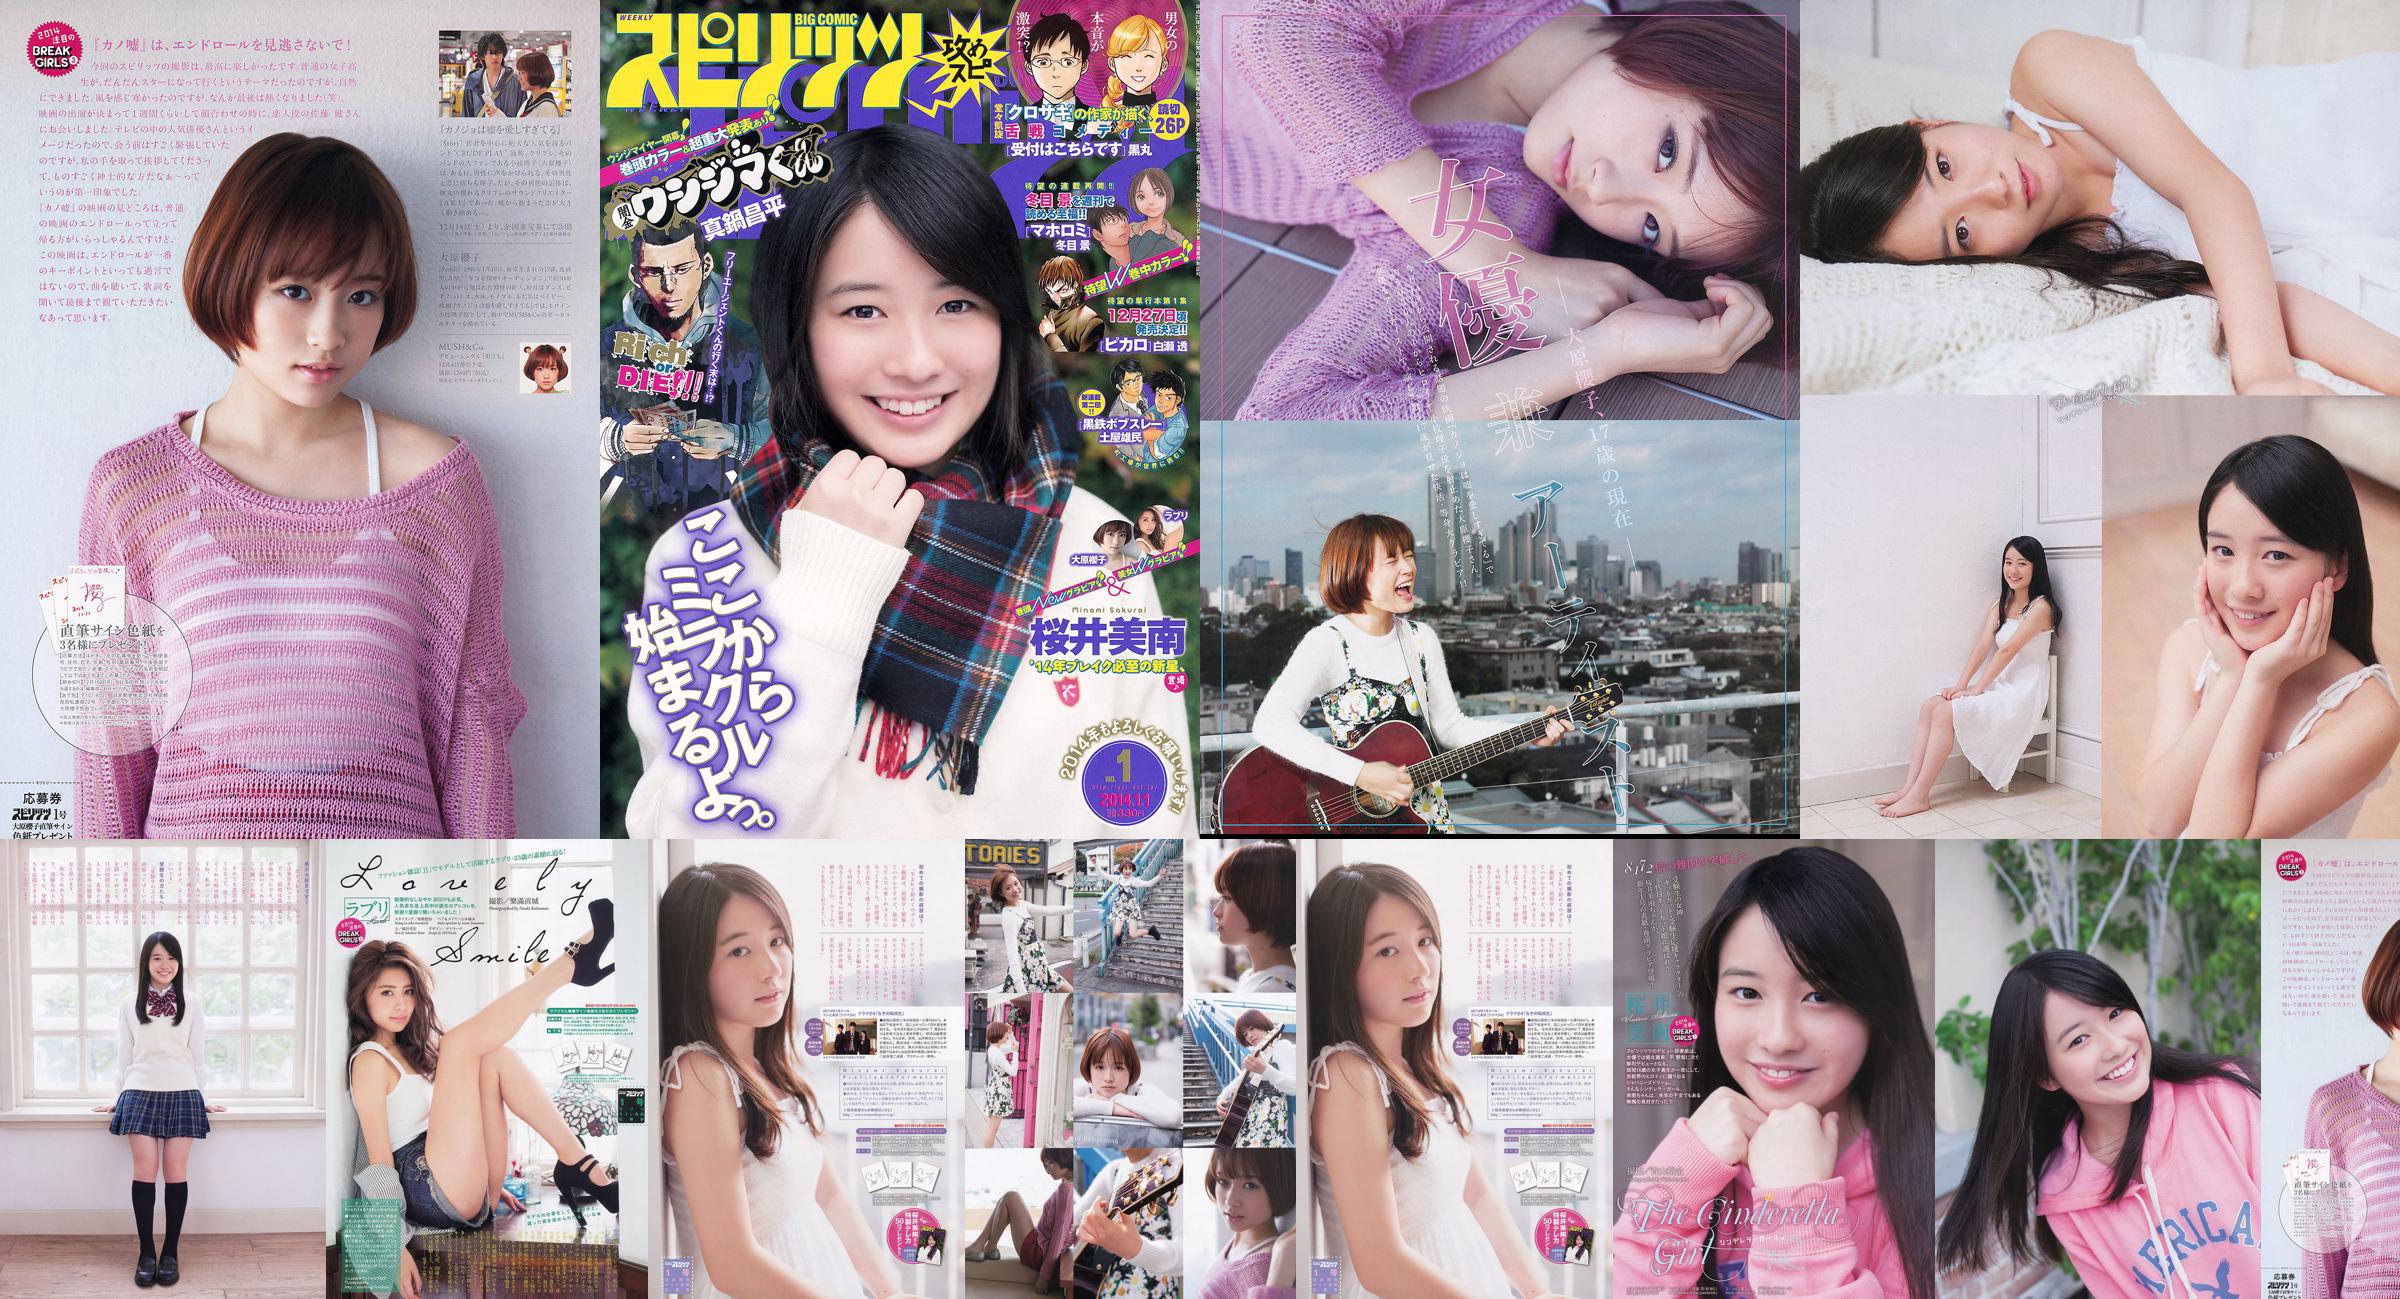 [Wöchentliche große Comic-Geister] Sakurai Minan Ohara Sakurako 2014 No.01 Photo Magazine No.7b758f Seite 1